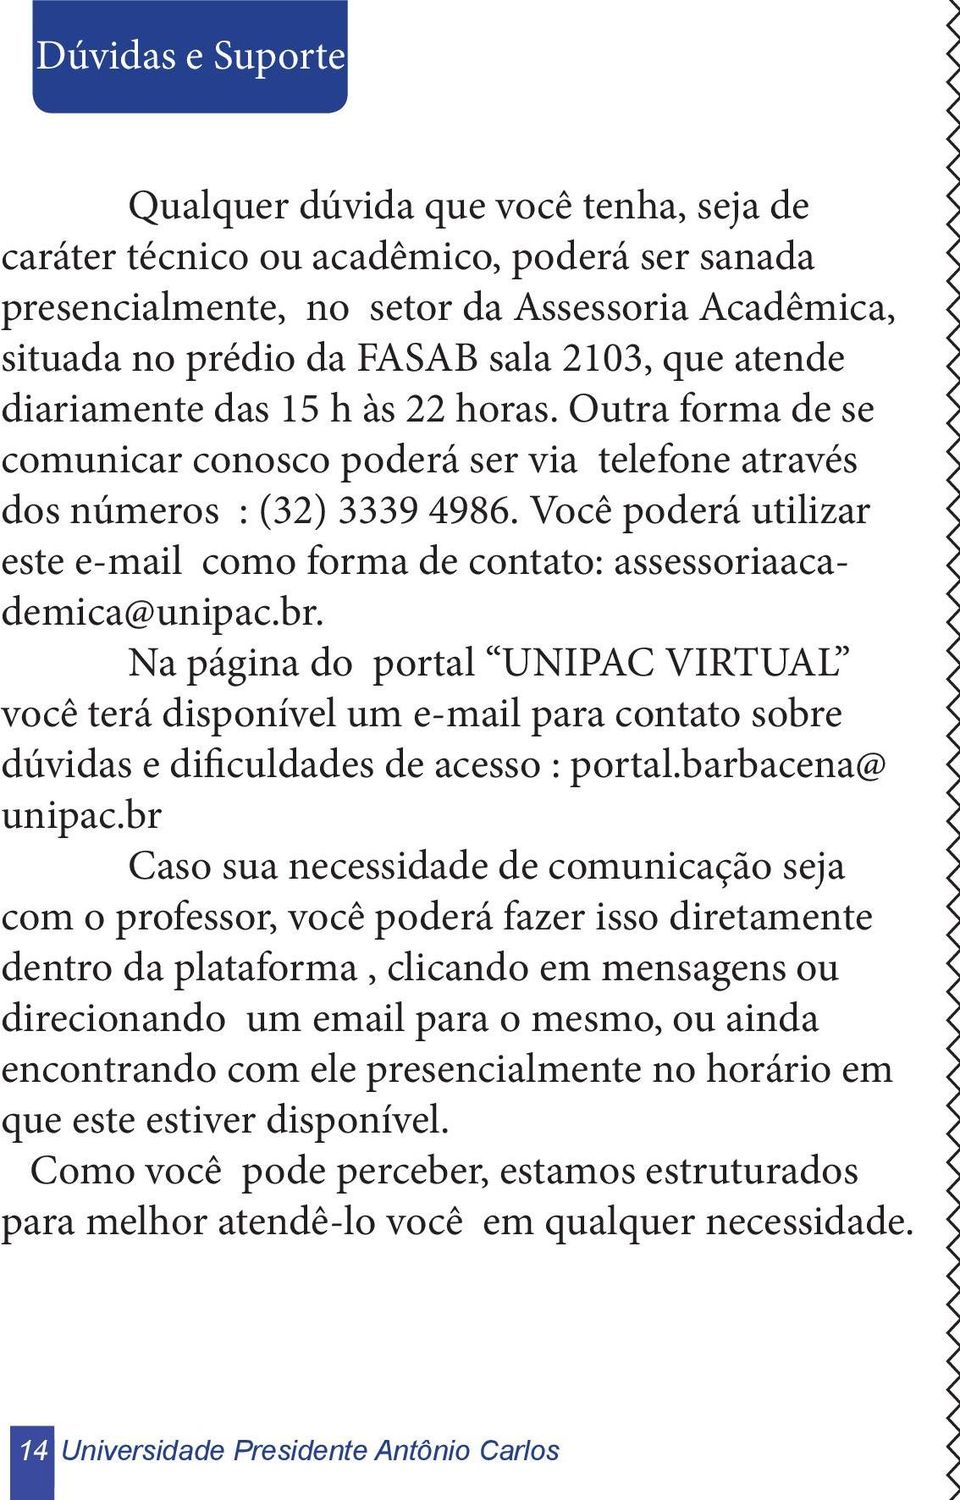 Você poderá utilizar este e-mail como forma de contato: assessoriaacademica@unipac.br.